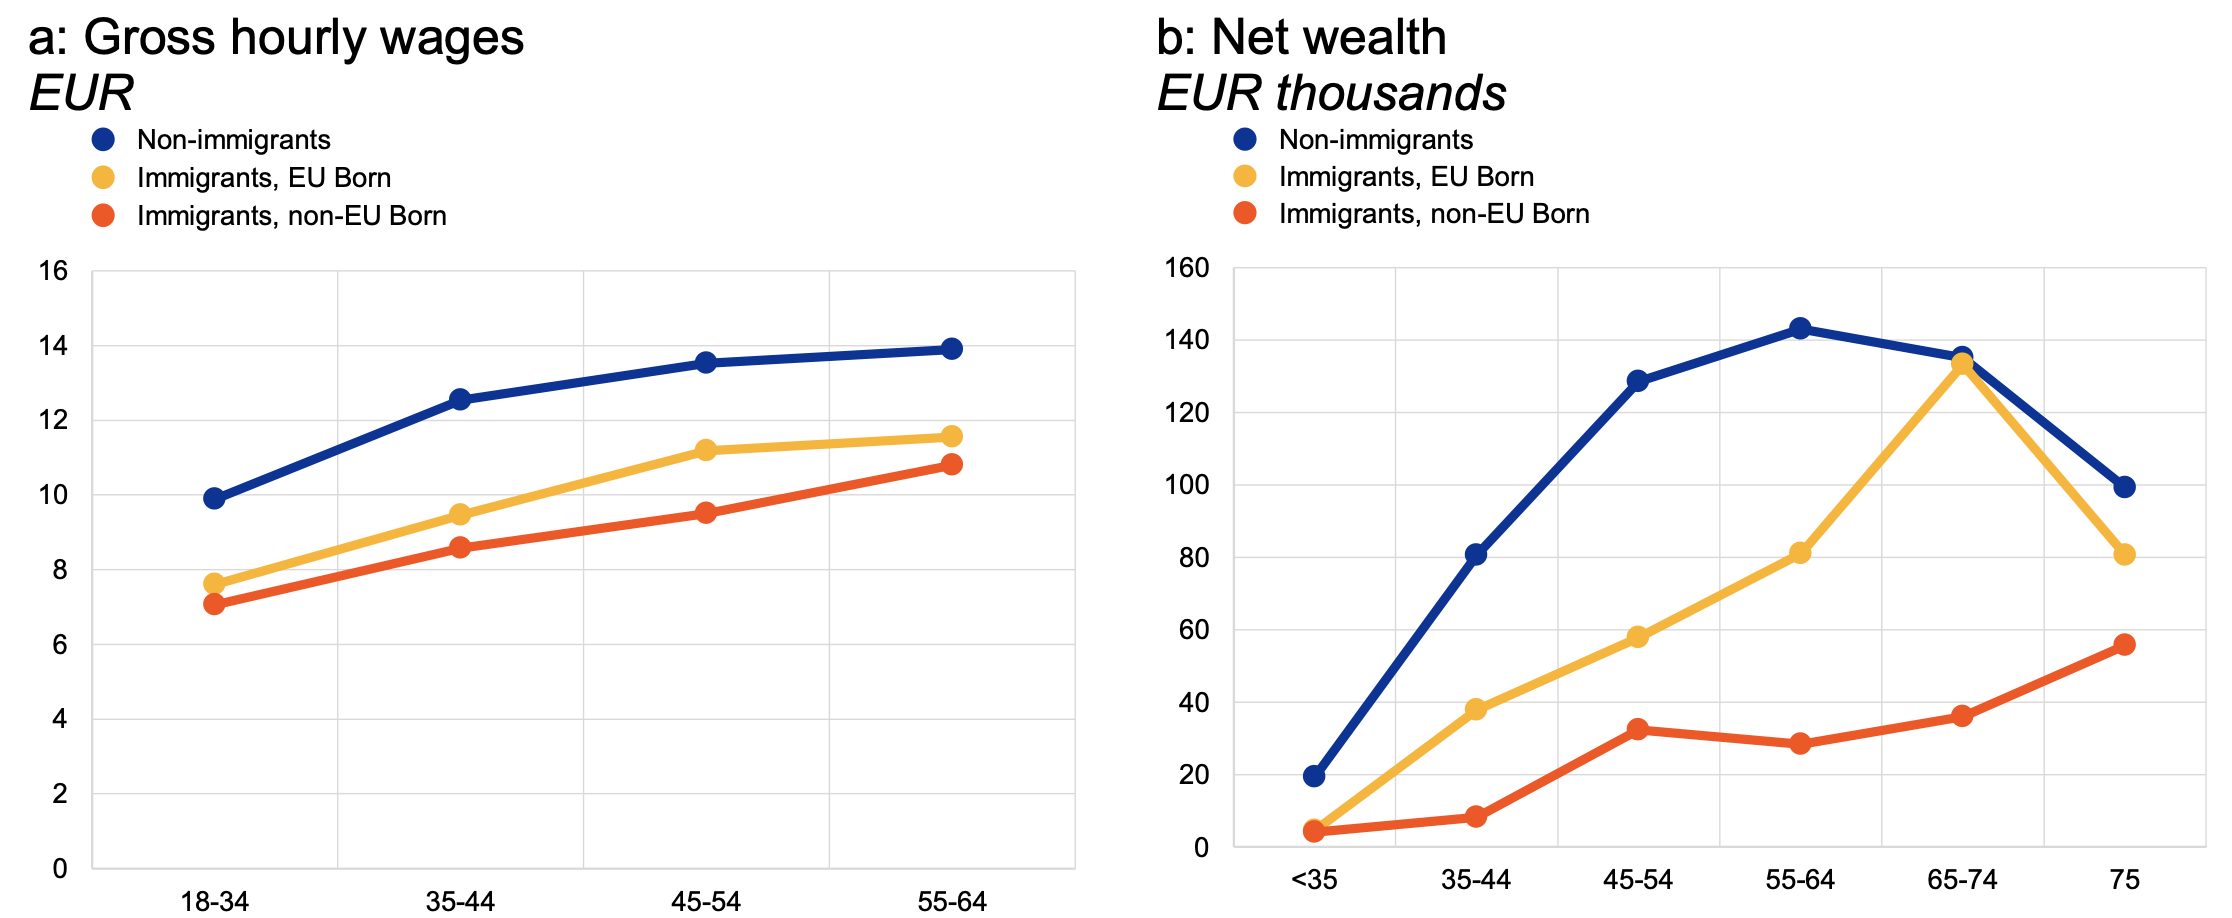 图1按年龄和出生国家划分的时薪和净财富中位数